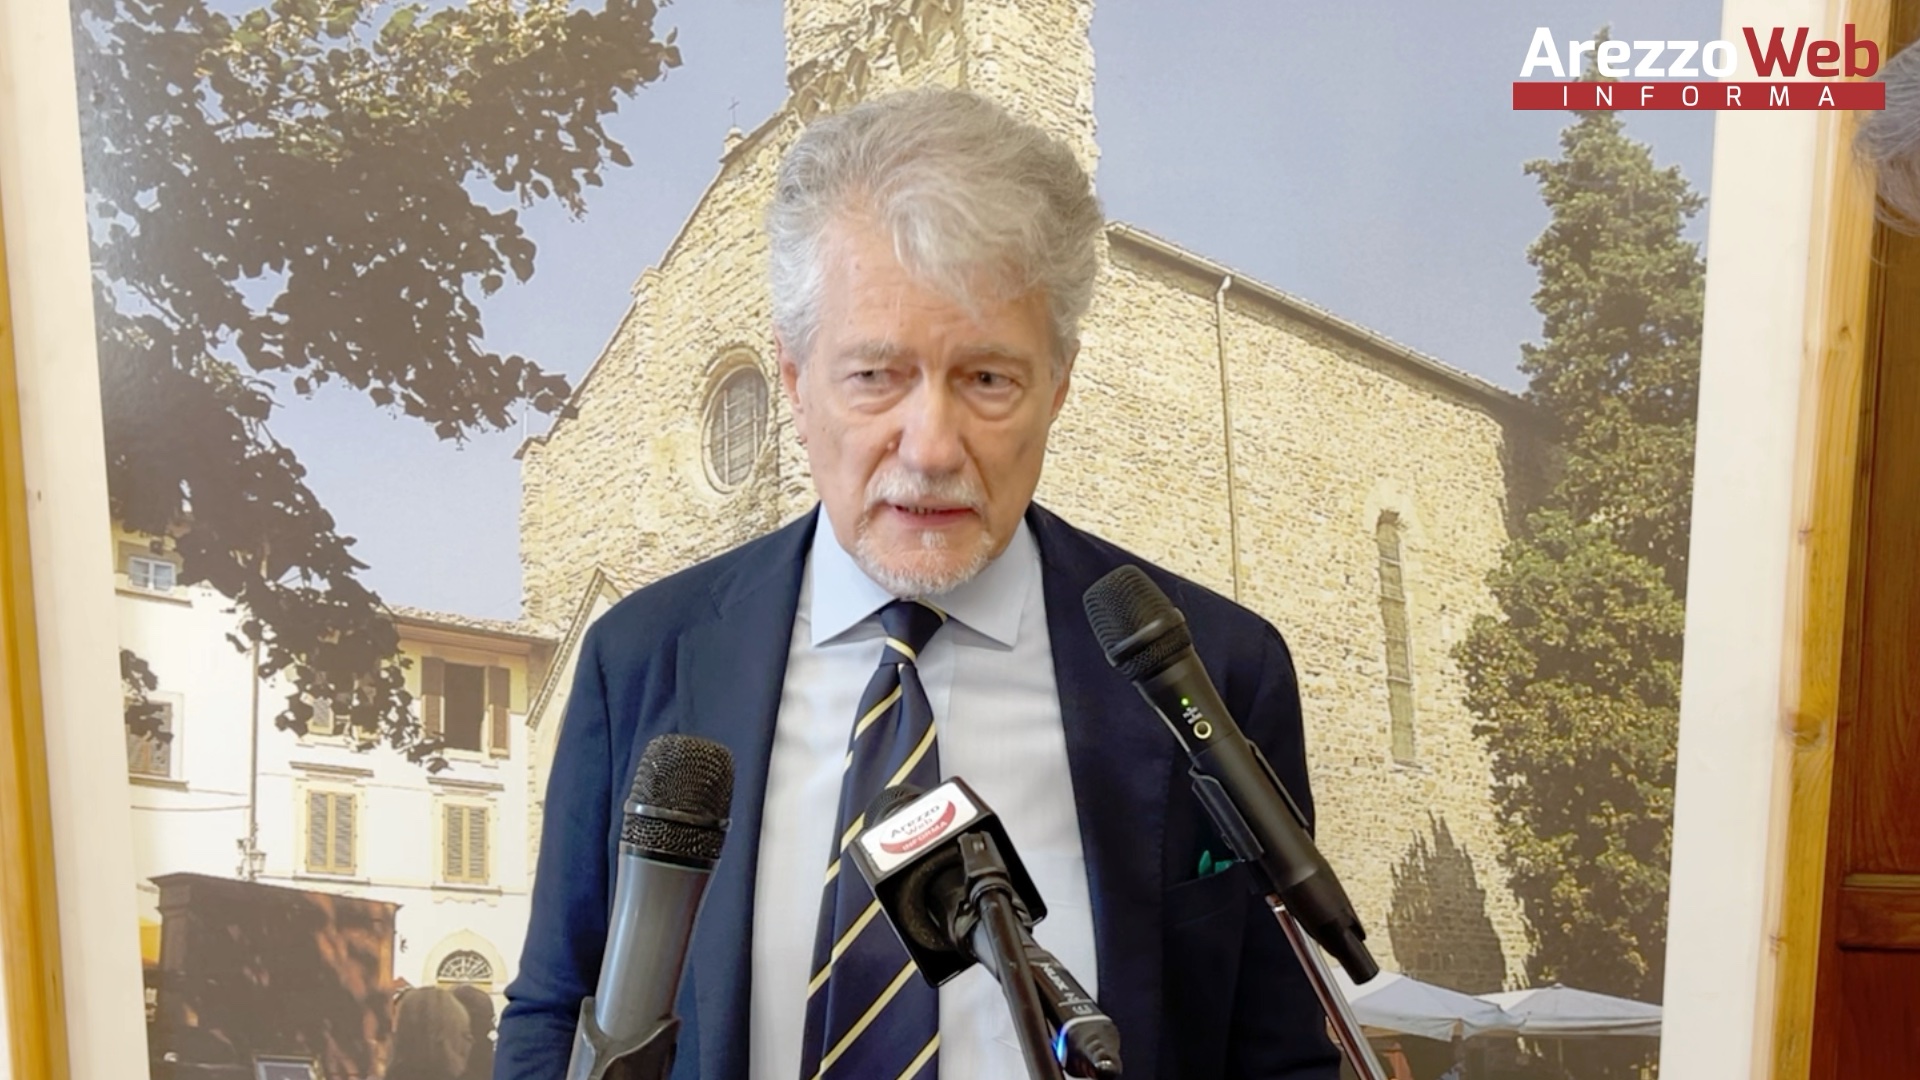 L’amministrazione Comunale smentisce categoricamente la notizia di una possibile designazione del Sindaco Alessandro Ghinelli quale componente del Cda di Arezzo Fiere